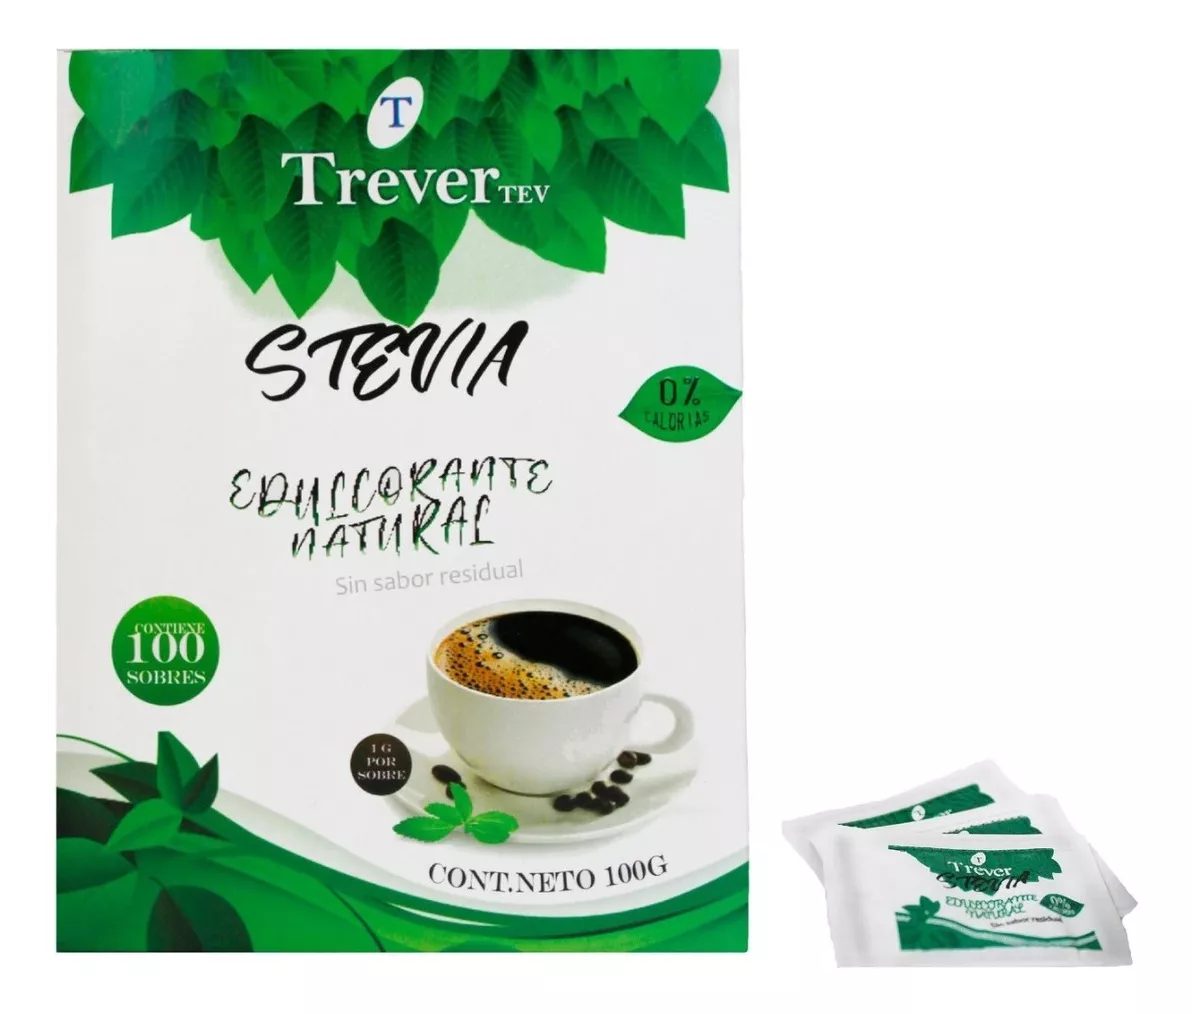 Primera imagen para búsqueda de stevia 100 natural